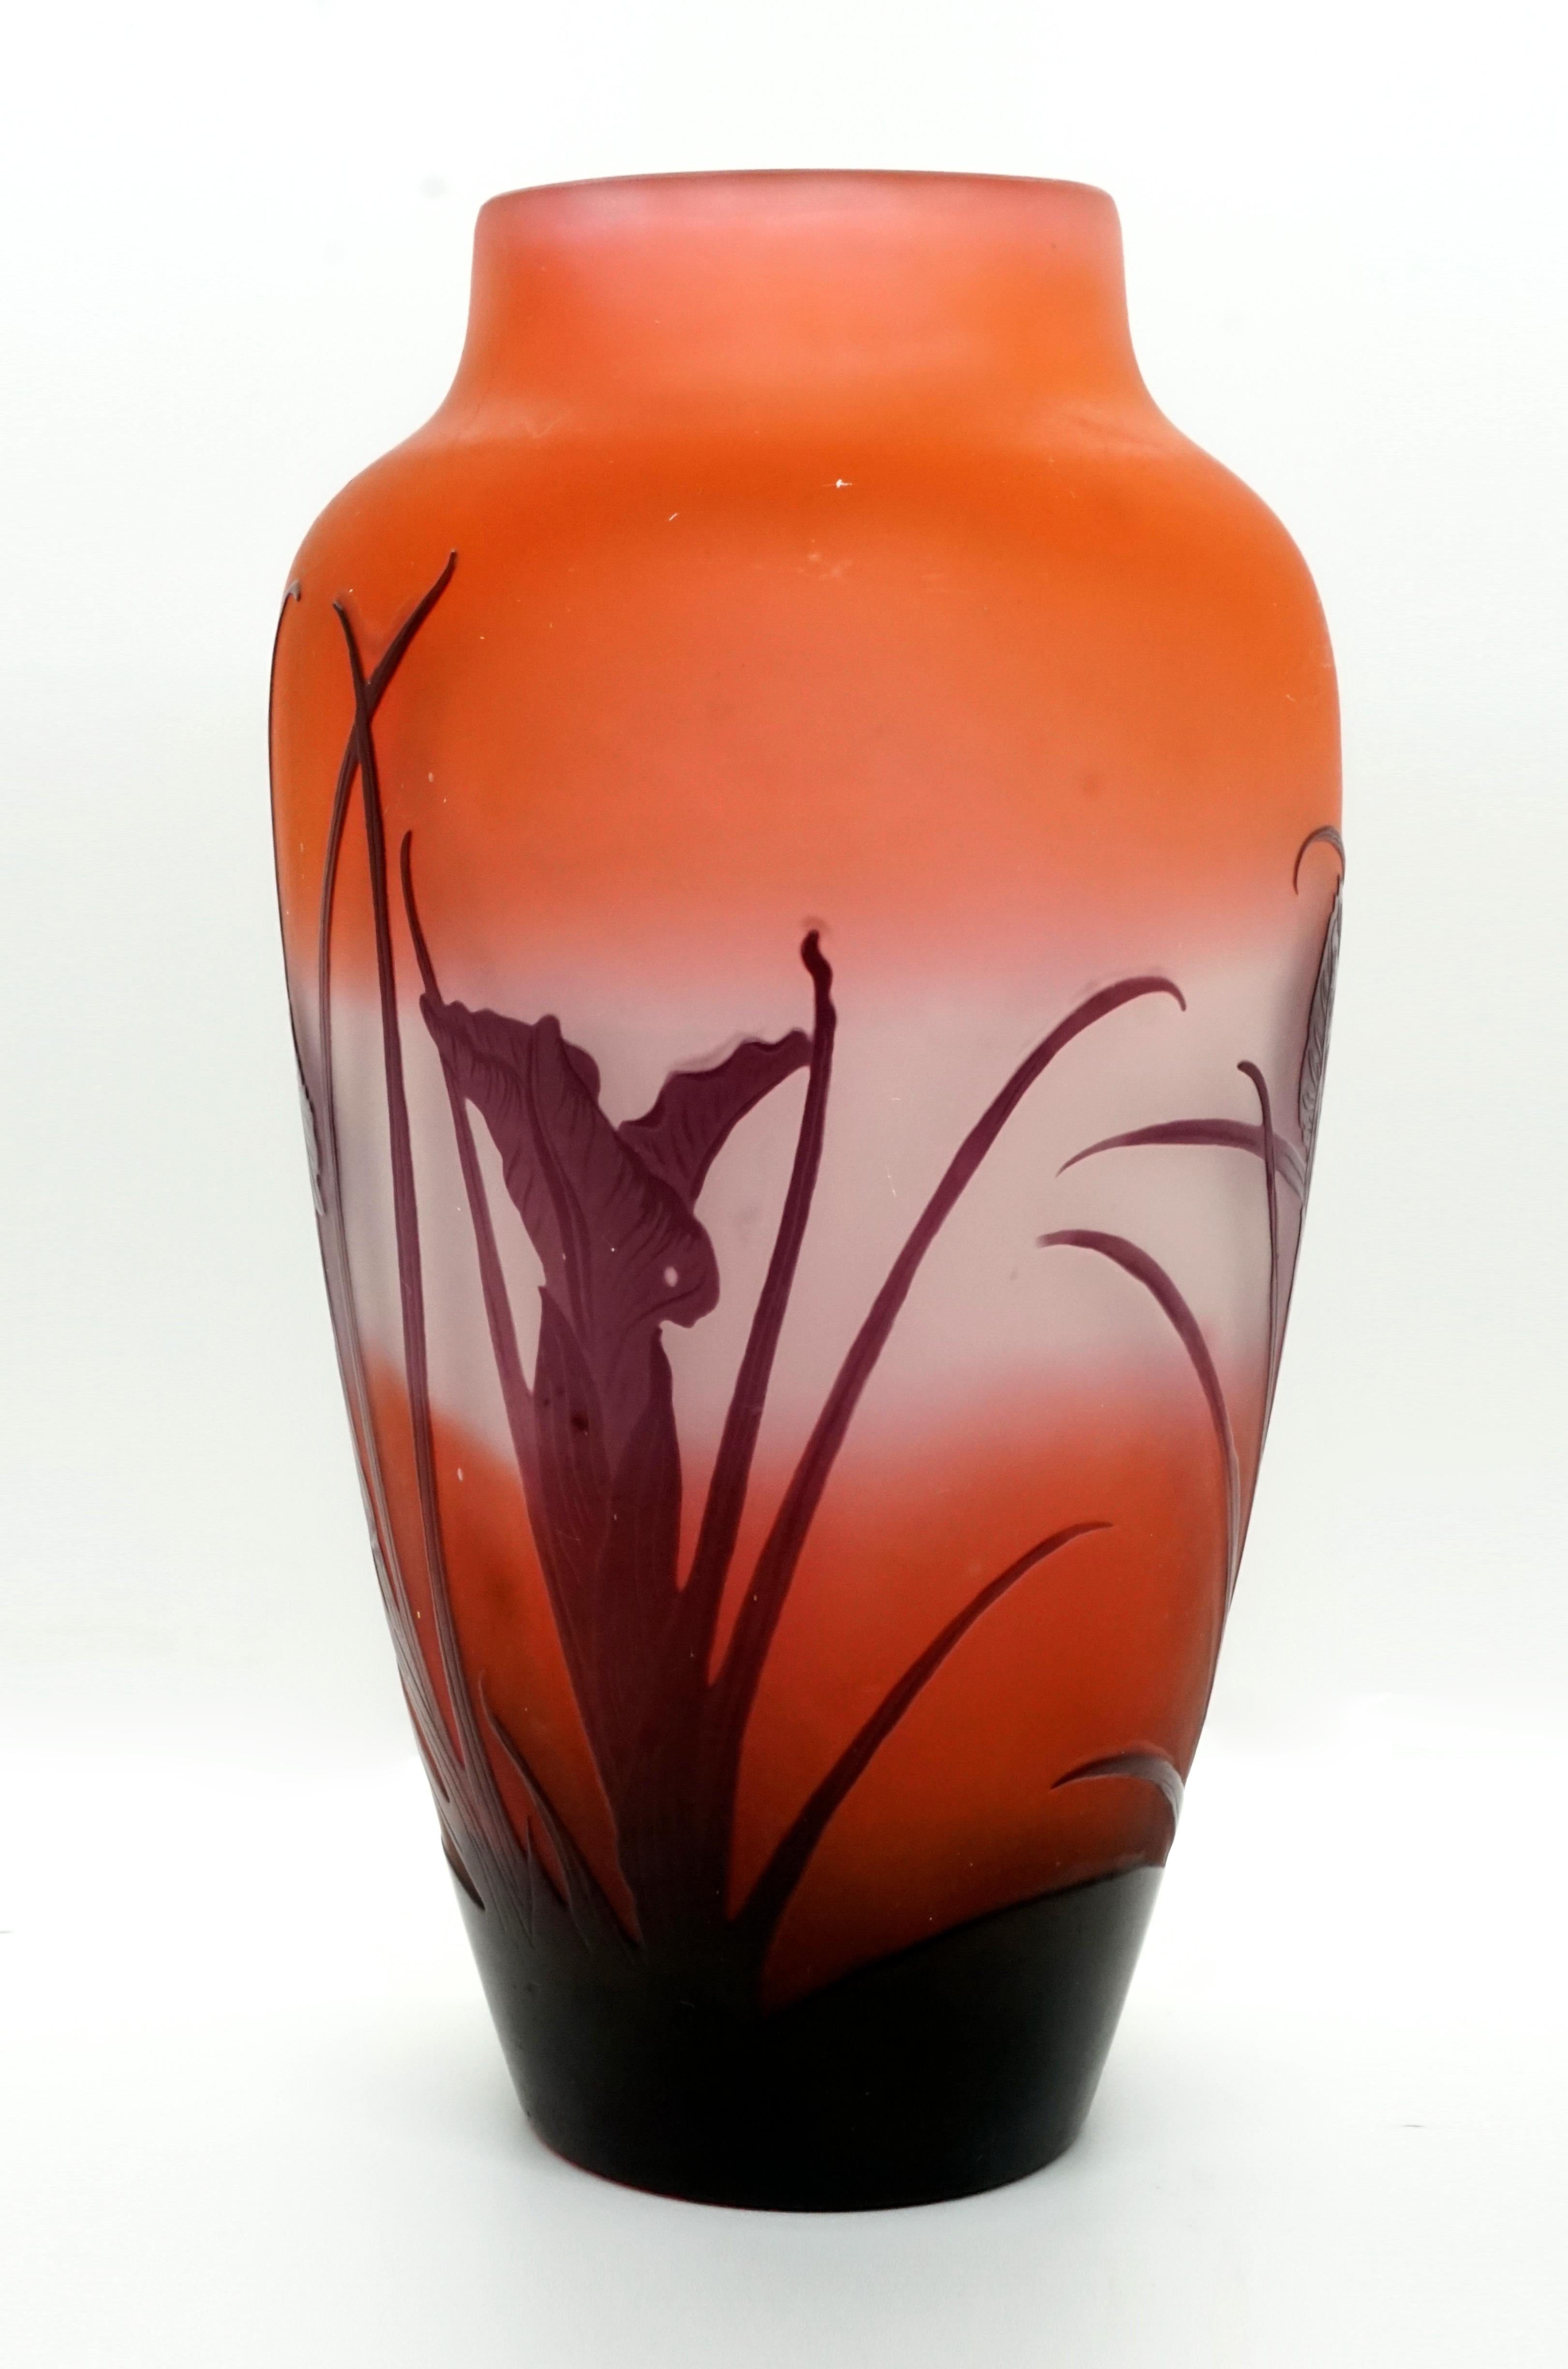 Etched Émile Gallé Art Nouveau Vase with Iris Decor, France, 1920-1925